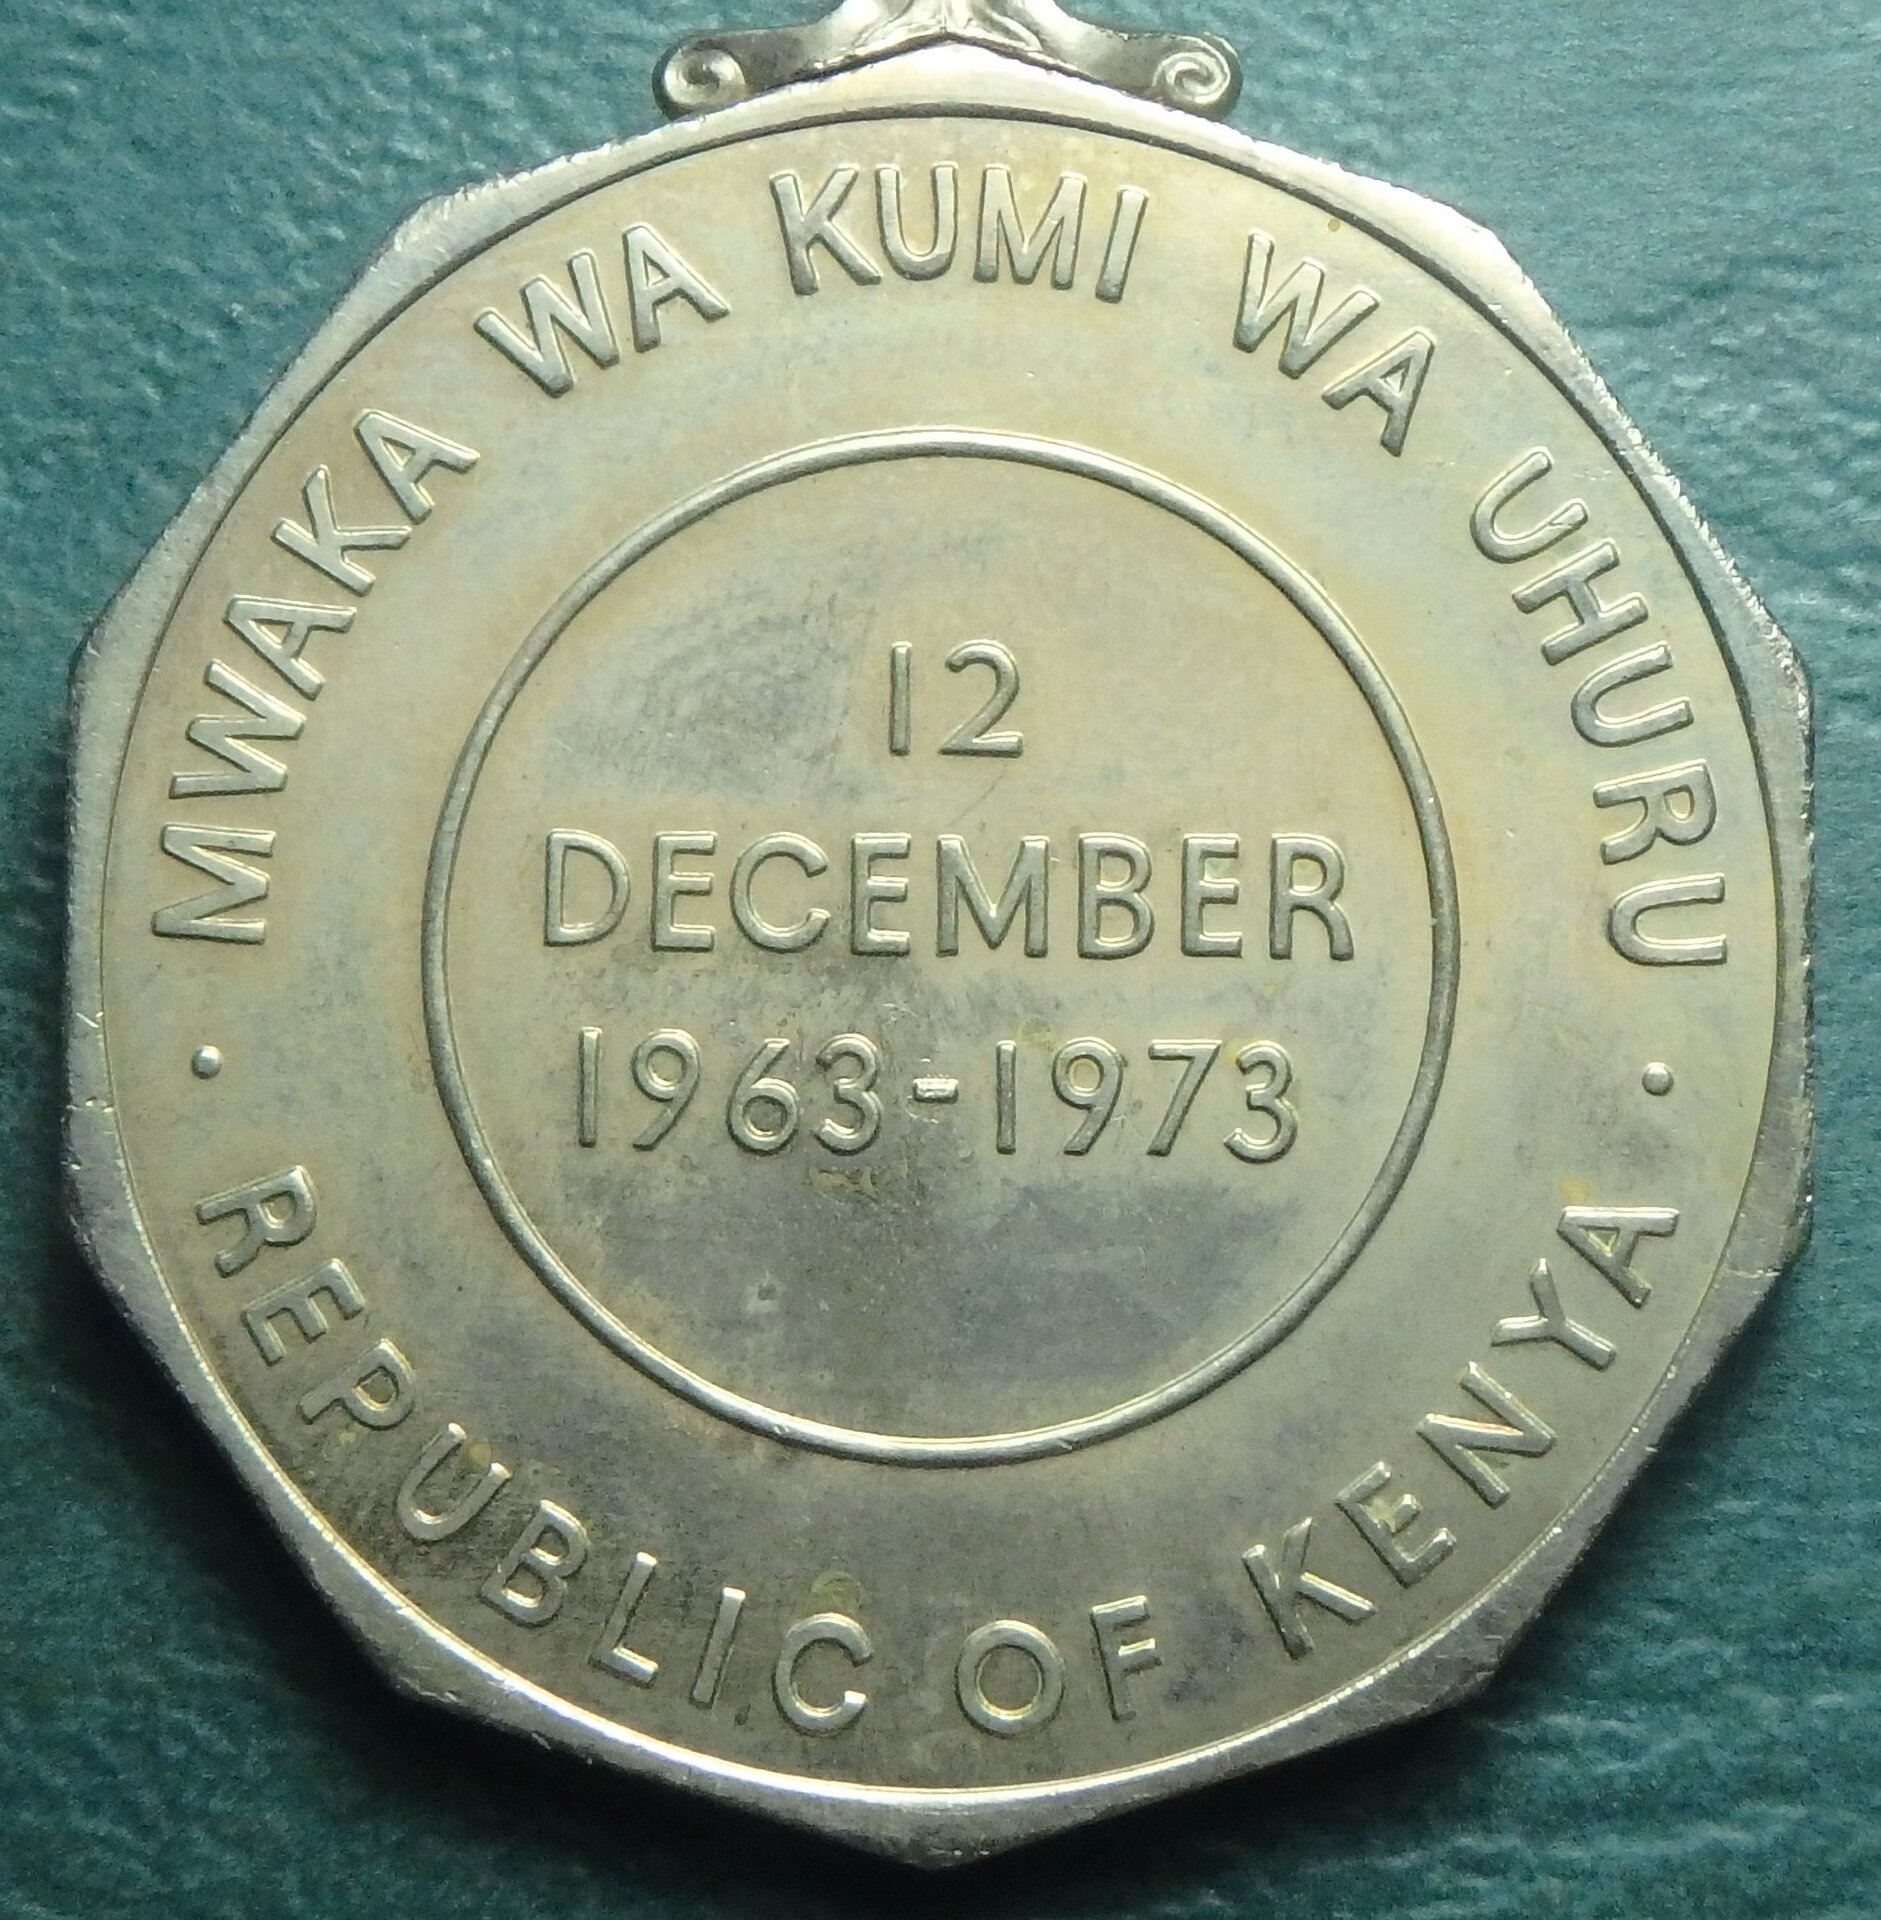 1973 Kenya Medal rev.JPG